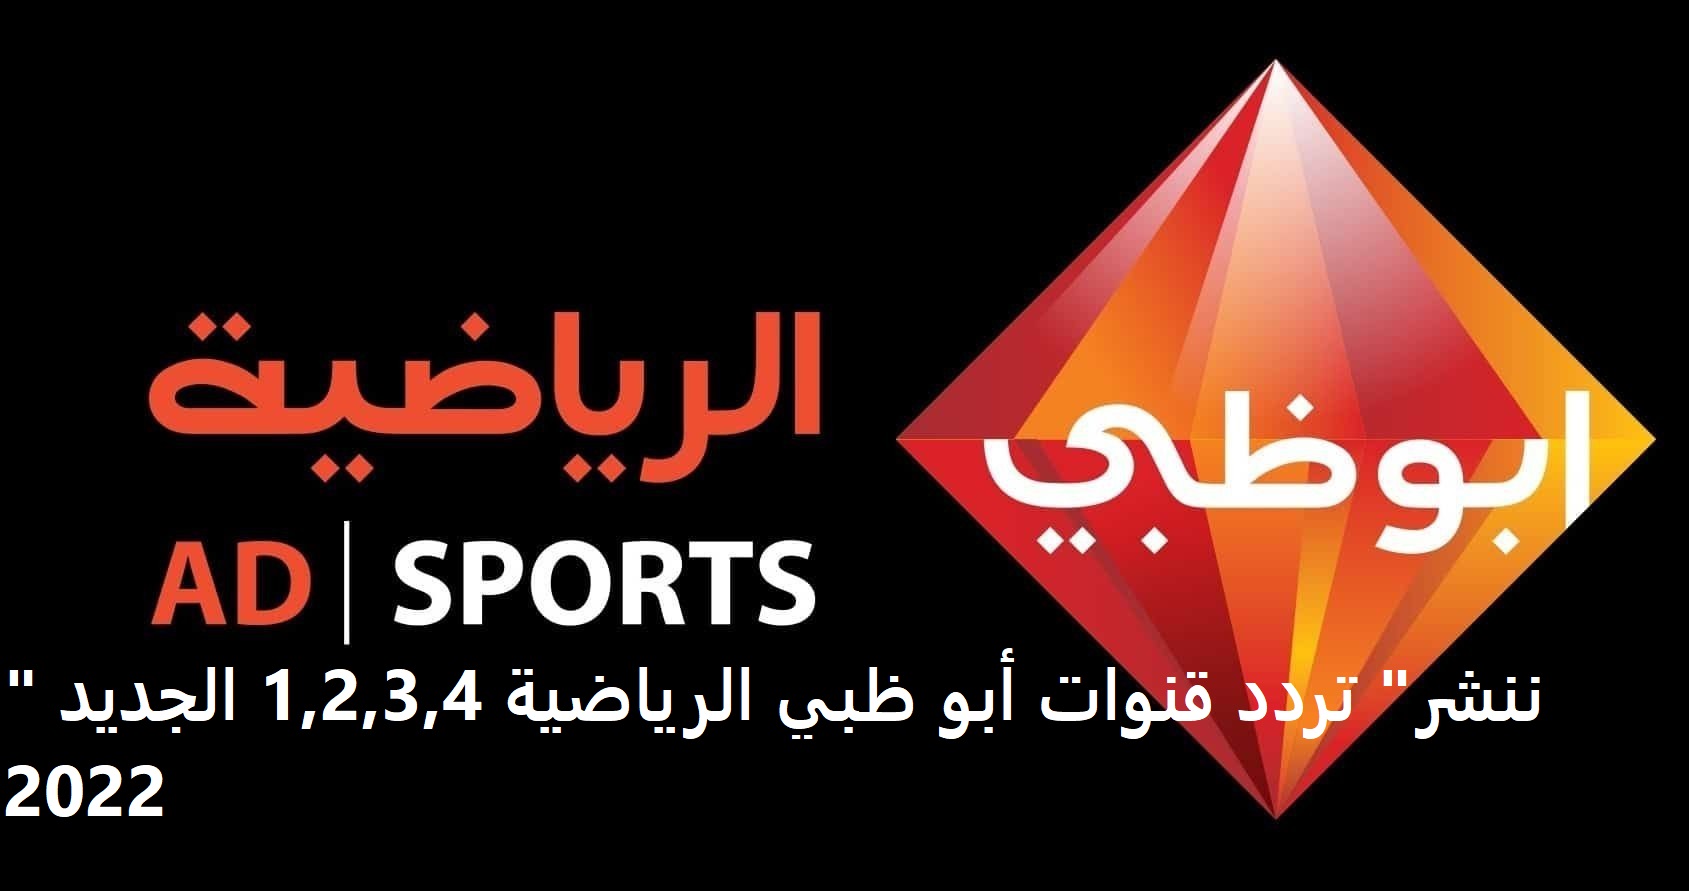 "ننشر" تردد قنوات أبو ظبي الرياضية 1,2,3,4 الجديد 2022.. قناة Abu Dhabi Sports مجانا استقبال كافة قنوات ابو ظبي الرياضية